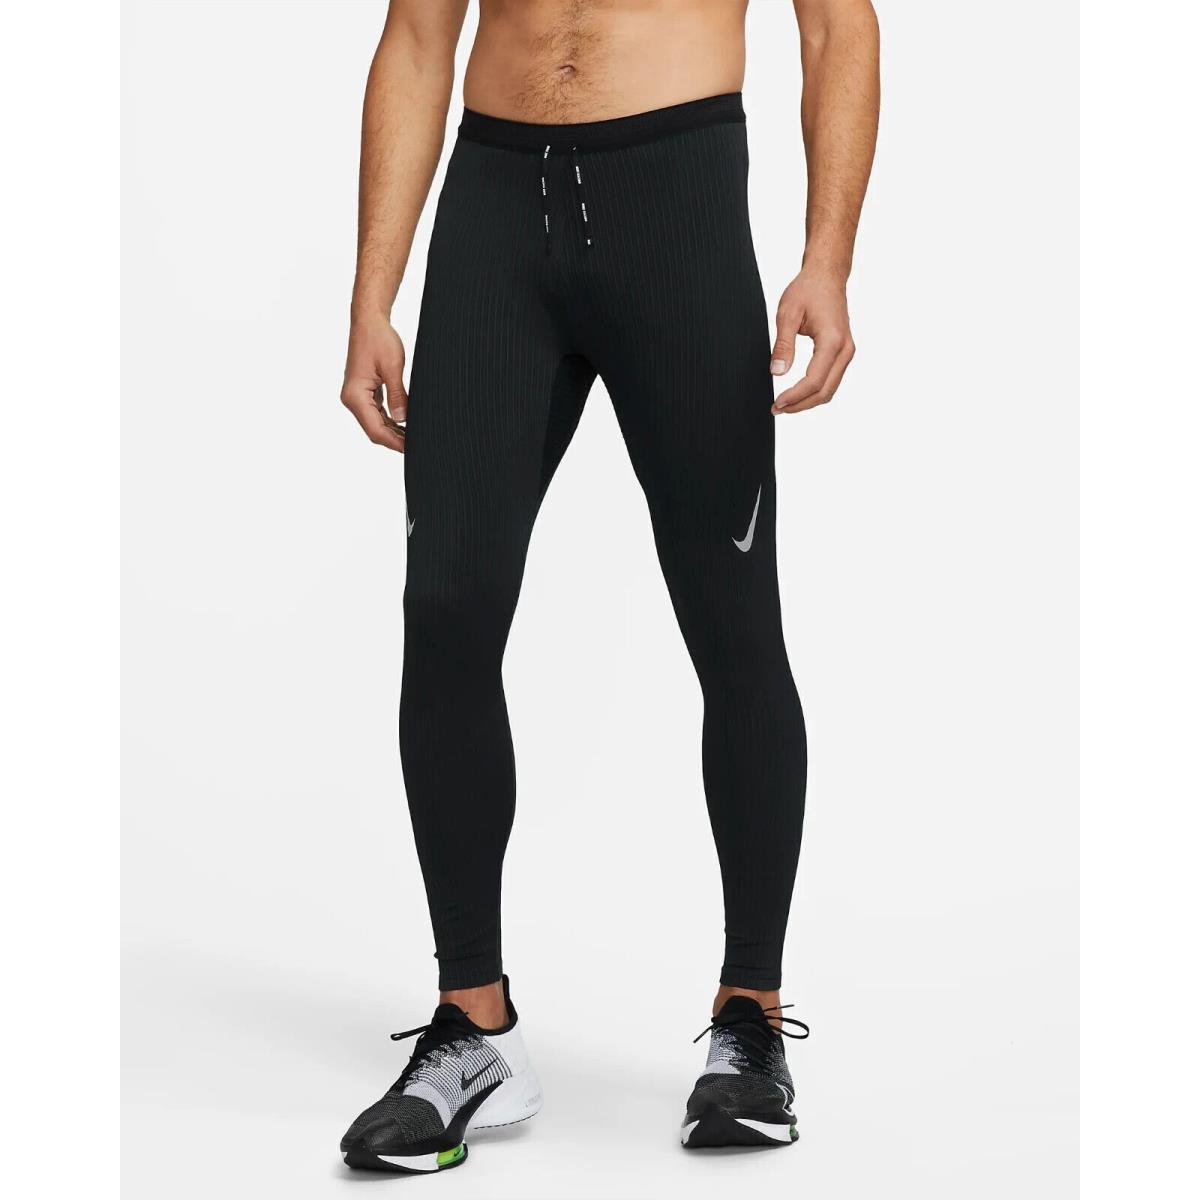 Nike Dri-fit Adv Aeroswift Racing Men`s Tights Pants Black S M M-t L DM4613-011